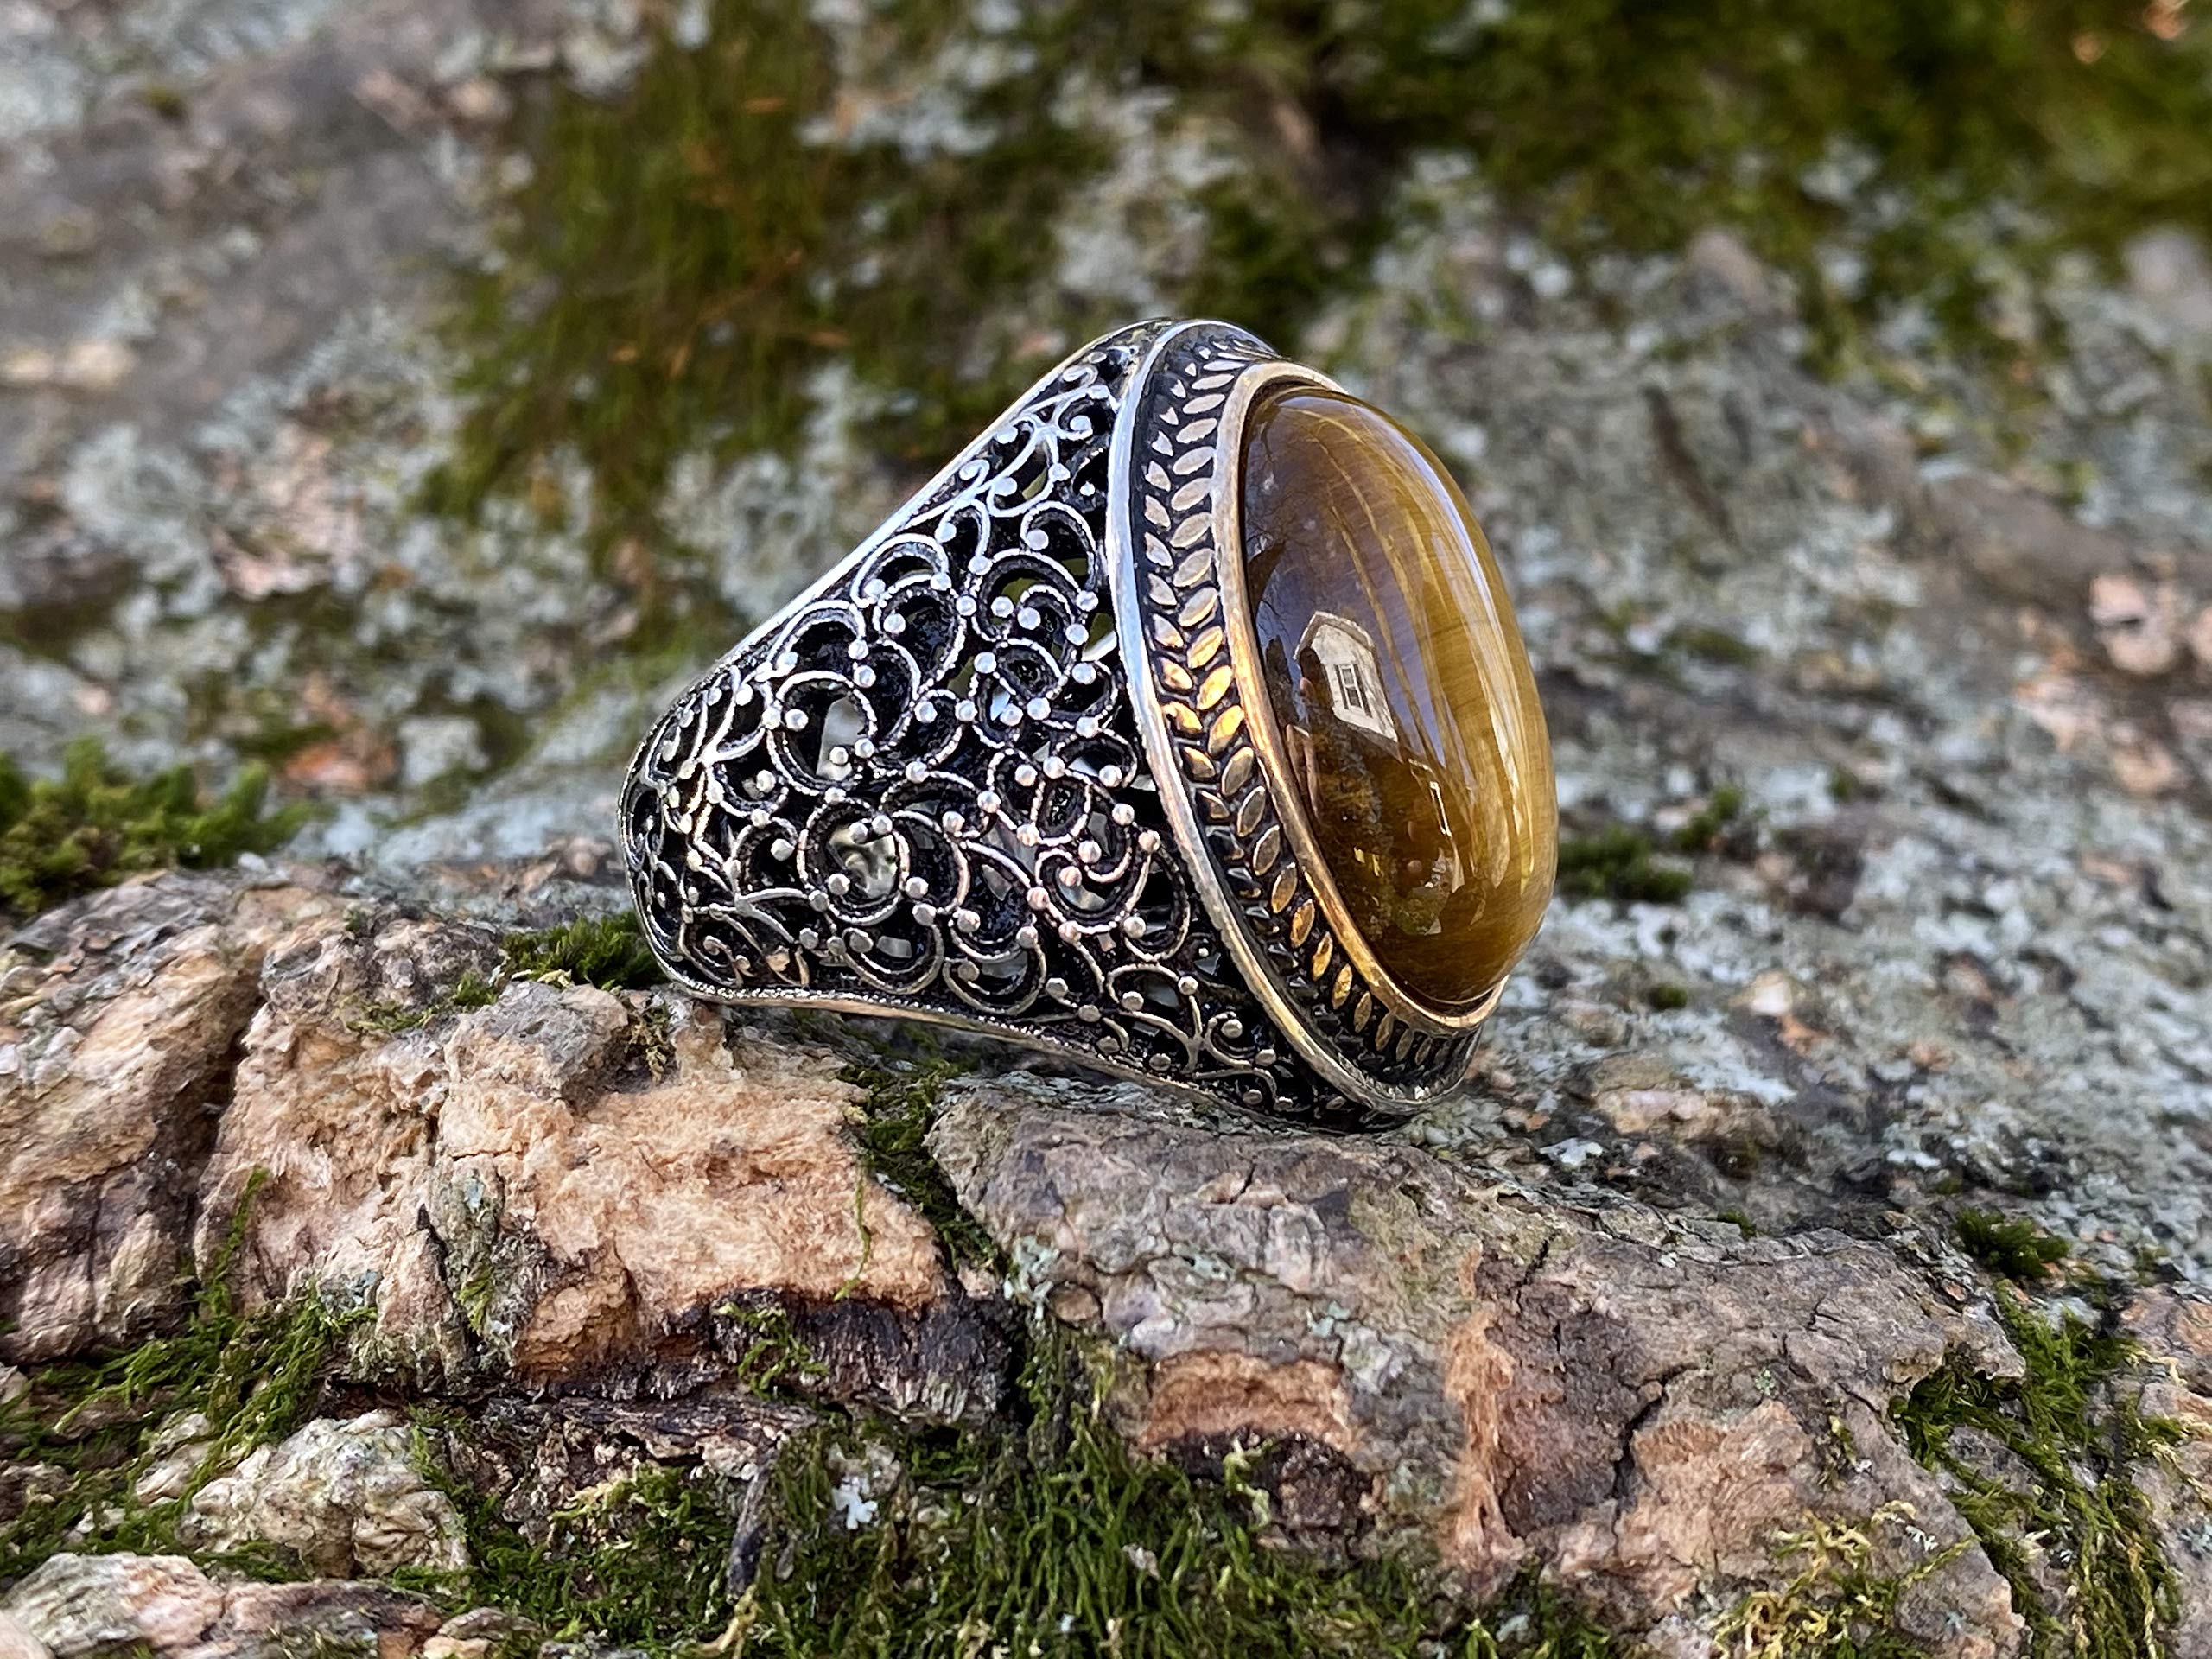 KAR 925K Stamped Sterling Silver Heavy Natural Oval Tiger Eye Men's Ring I1S Gift For Him